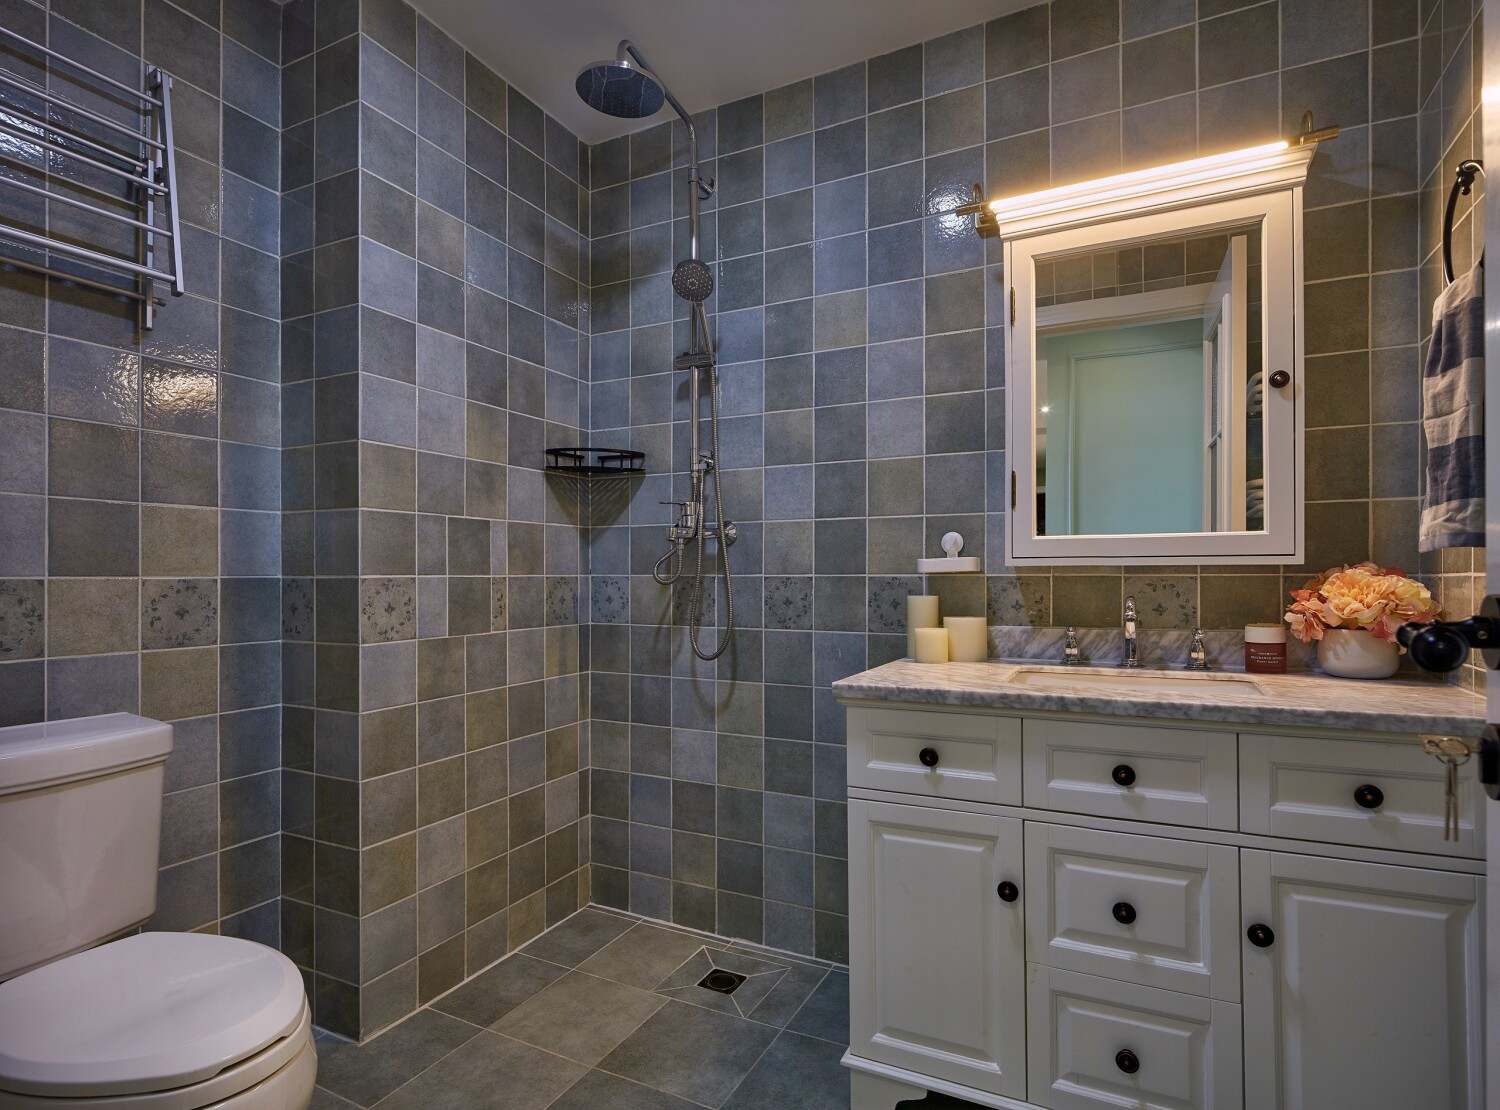 浴室还是保持的瓷砖的材料铺贴而成，那么浴室柜是采用美式主材的一种风格。浴室镜安装了灯饰，有一些装饰的效果。